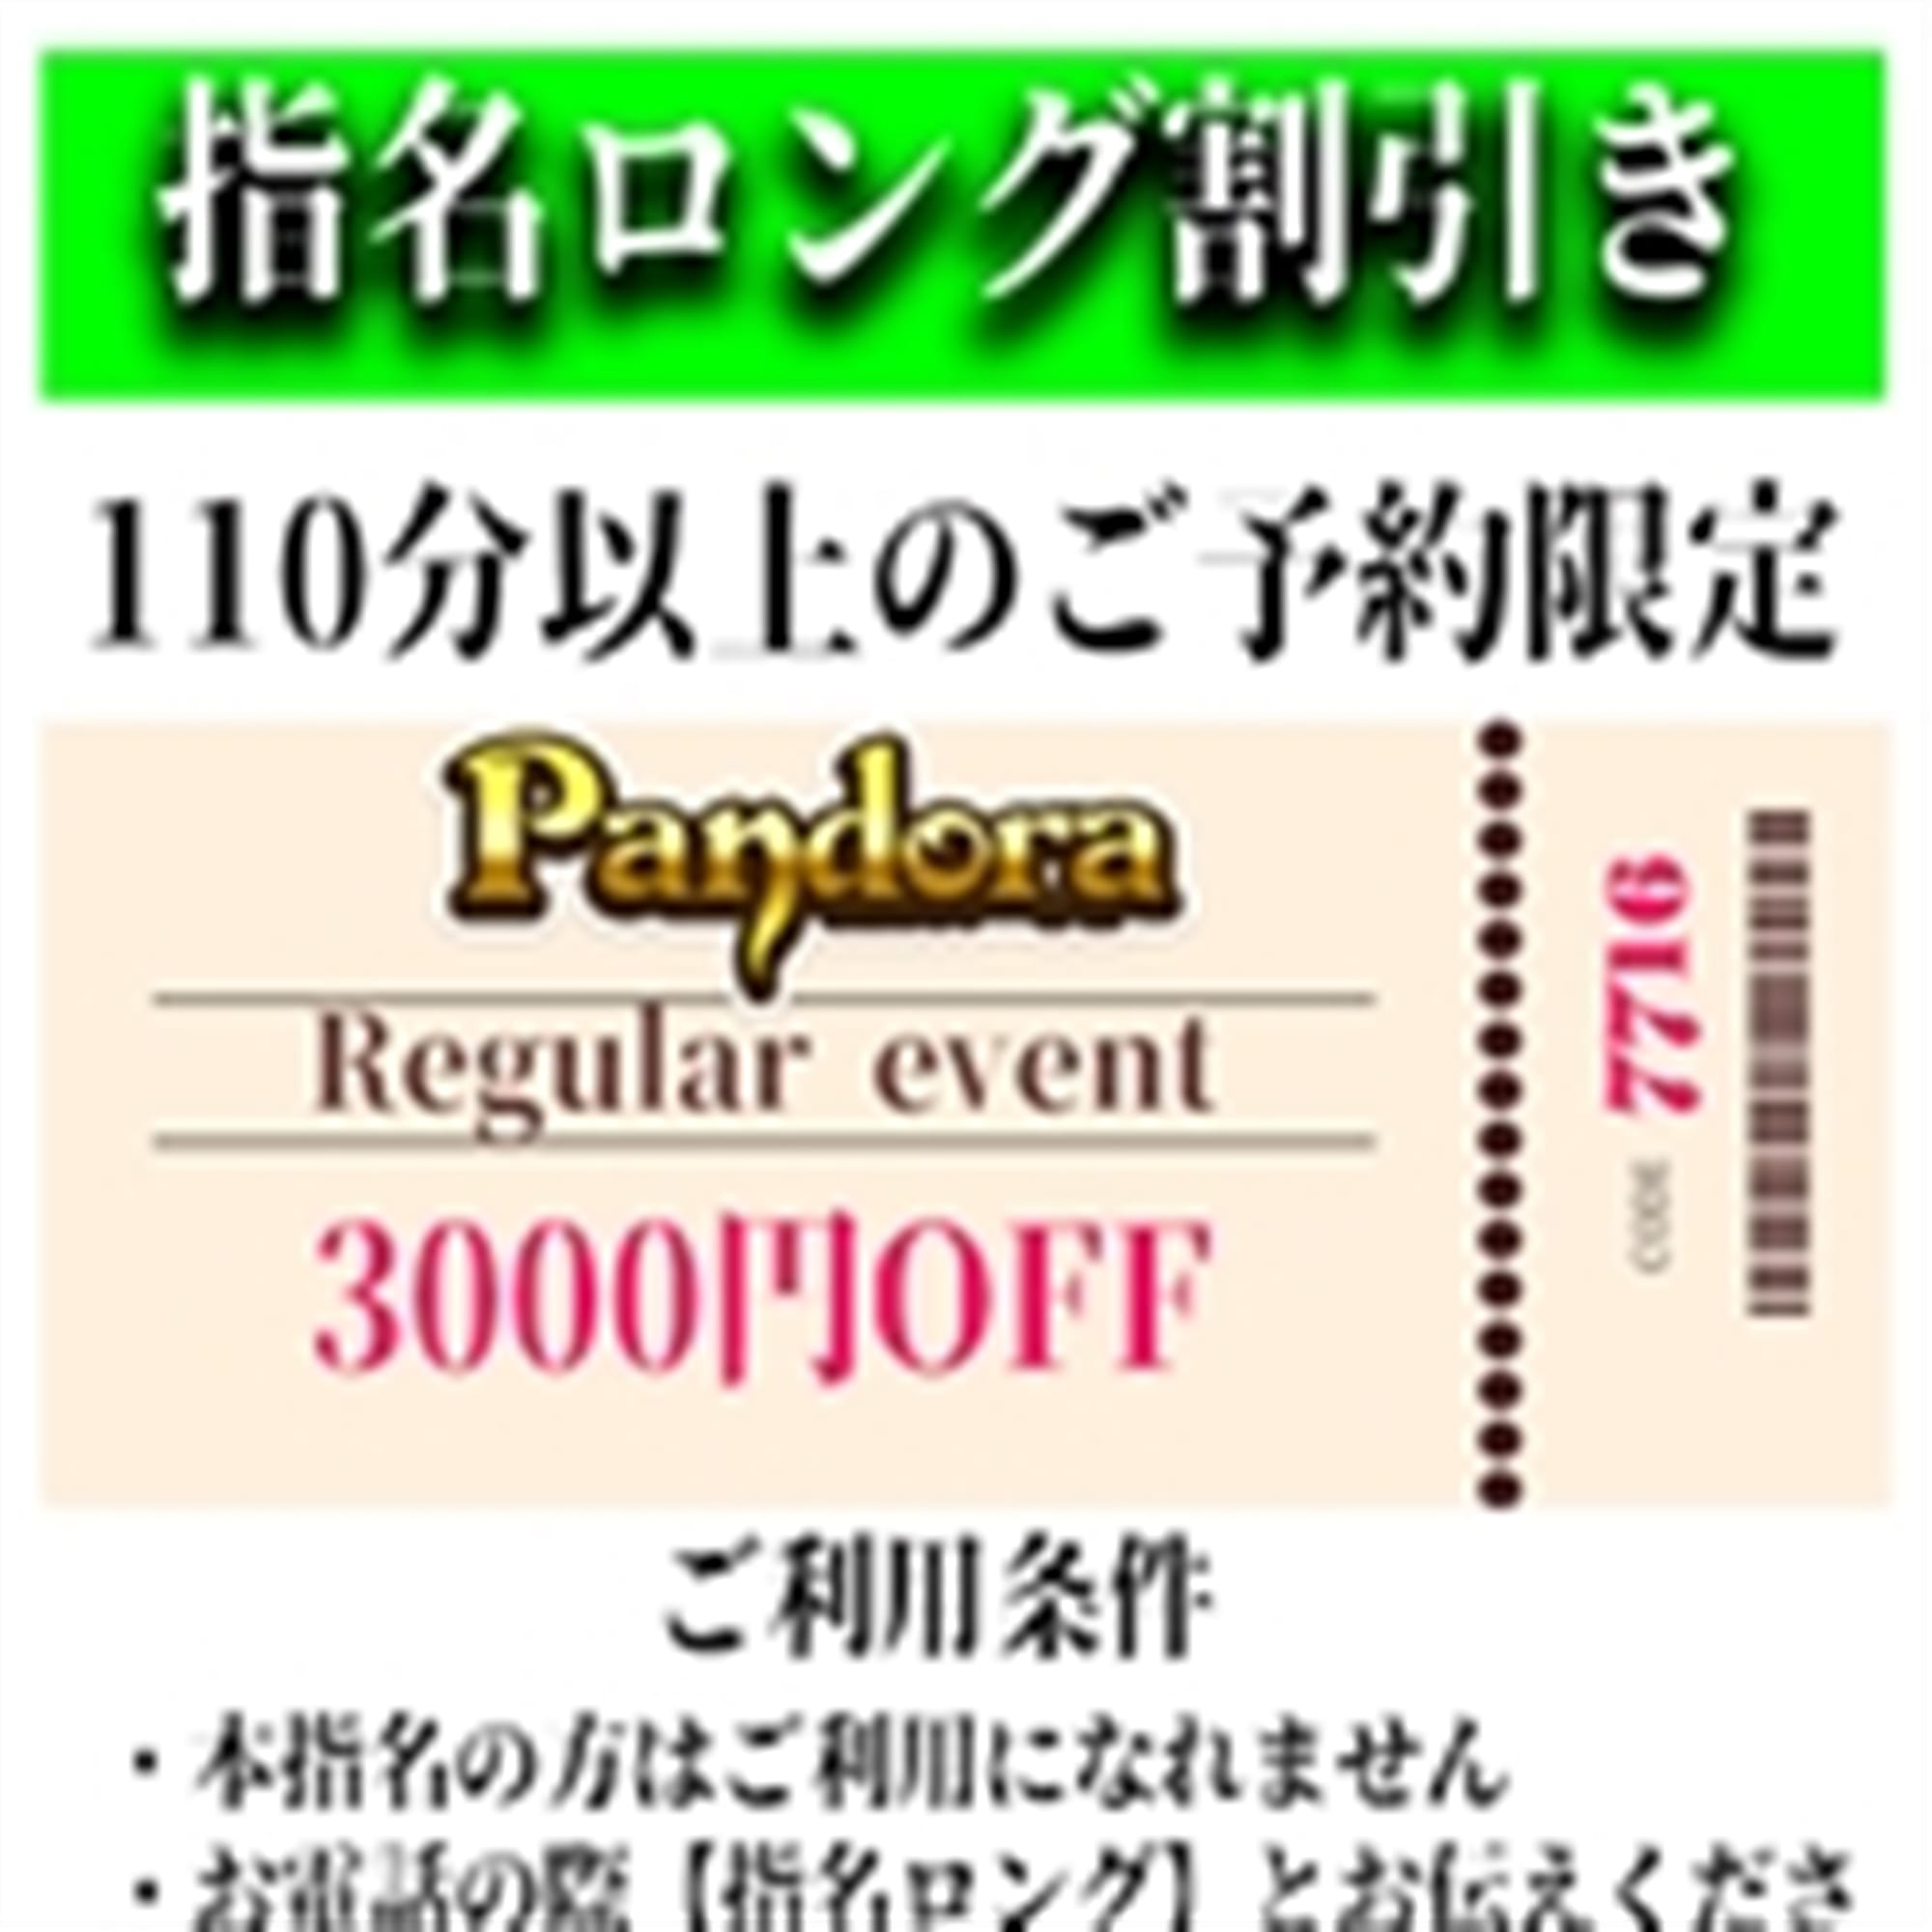 「ご指名のお客様も遊べるロングコース割引」04/20(土) 05:58 | Pandora(パンドラ)新潟のお得なニュース